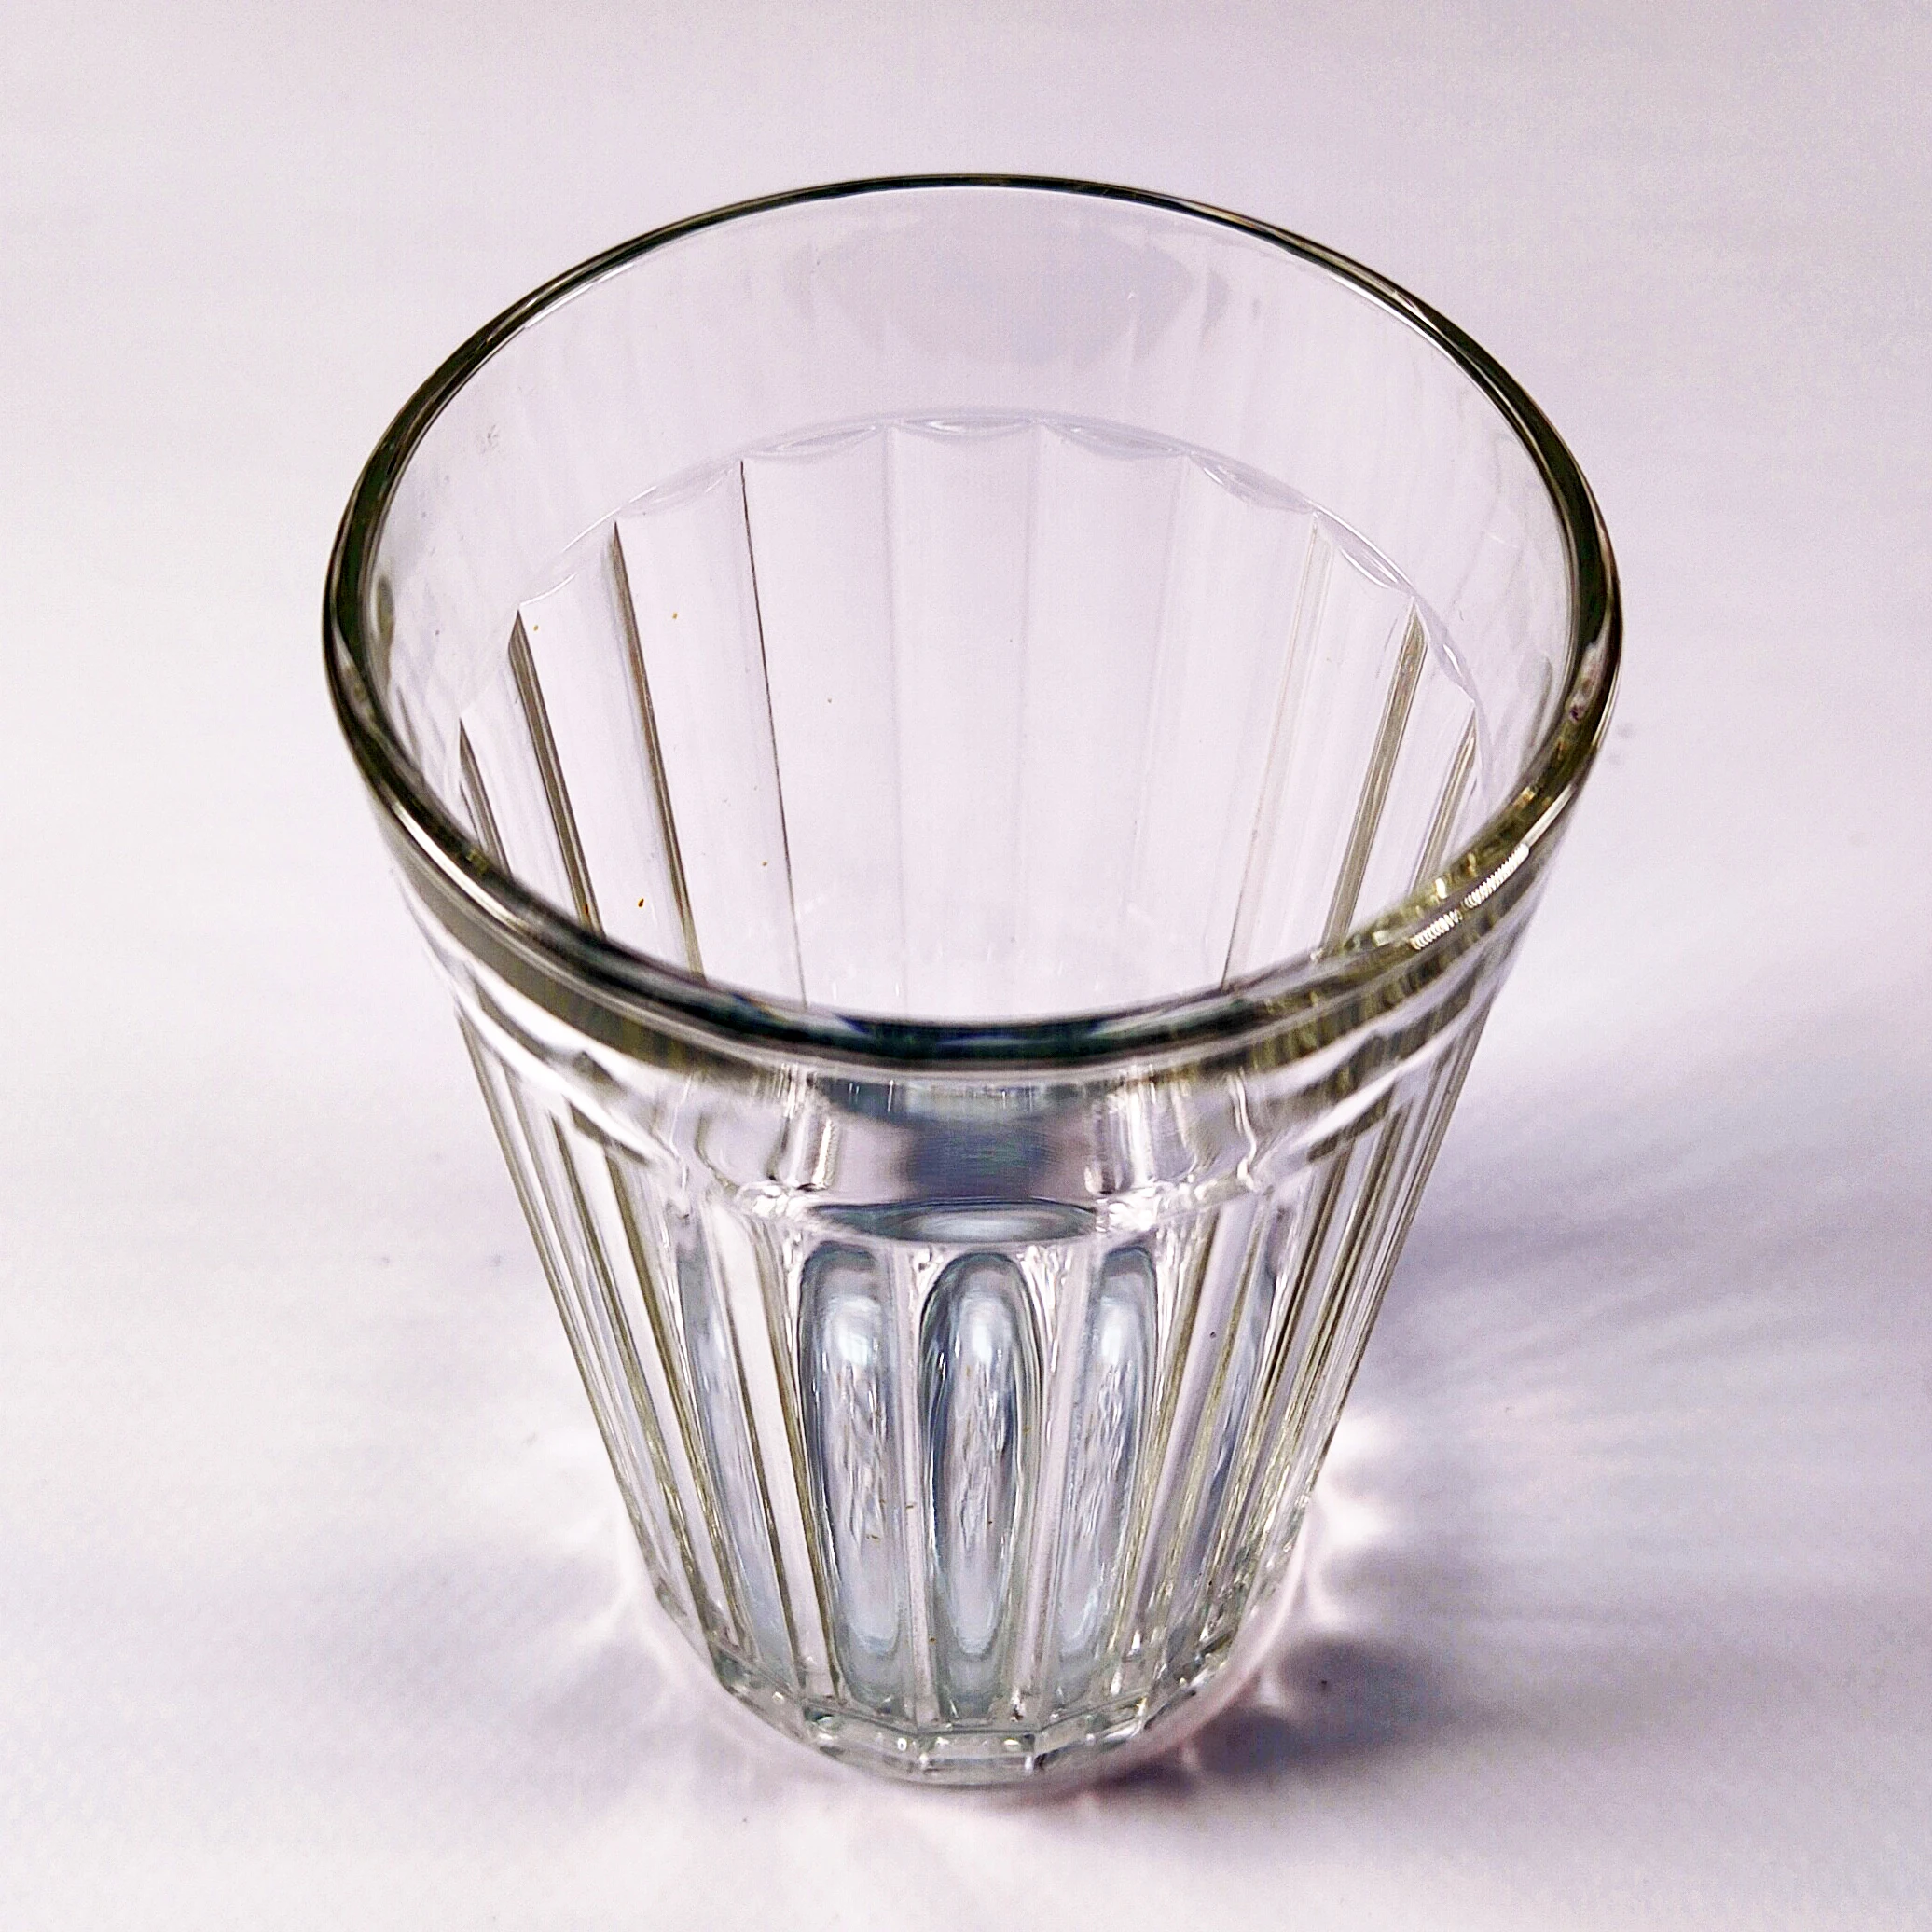 Чашка граненая. Прозрачный стакан с гранями. Стаканы с гранями внутри. Граненая чашка с ручкой.